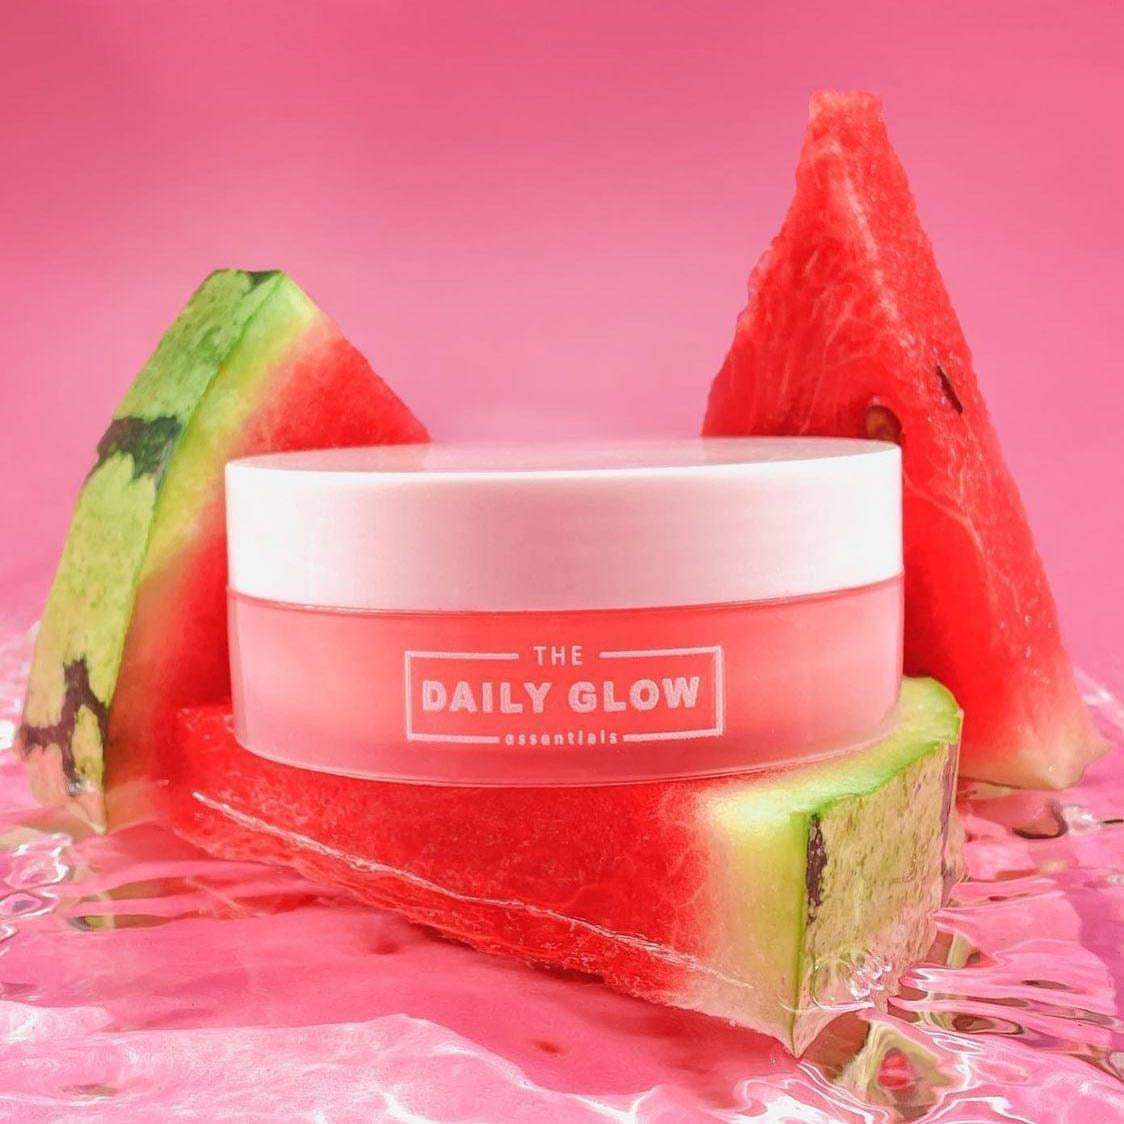 The Daily Glow Essentials Watermelon Glow Aqua Moisturizer